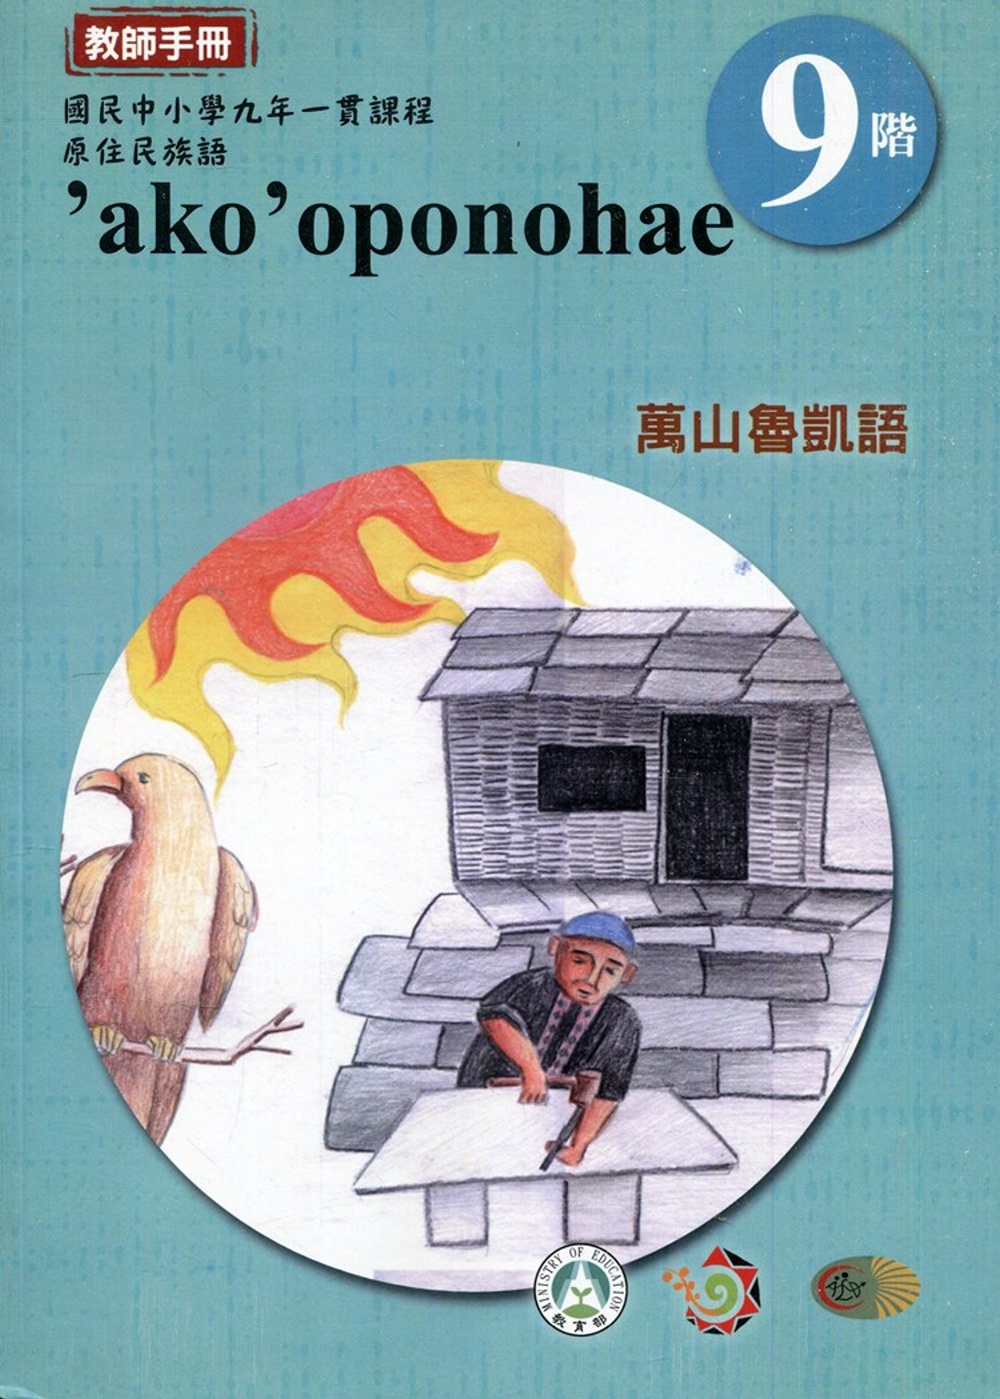 原住民族語萬山魯凱語第九階教師手冊2版